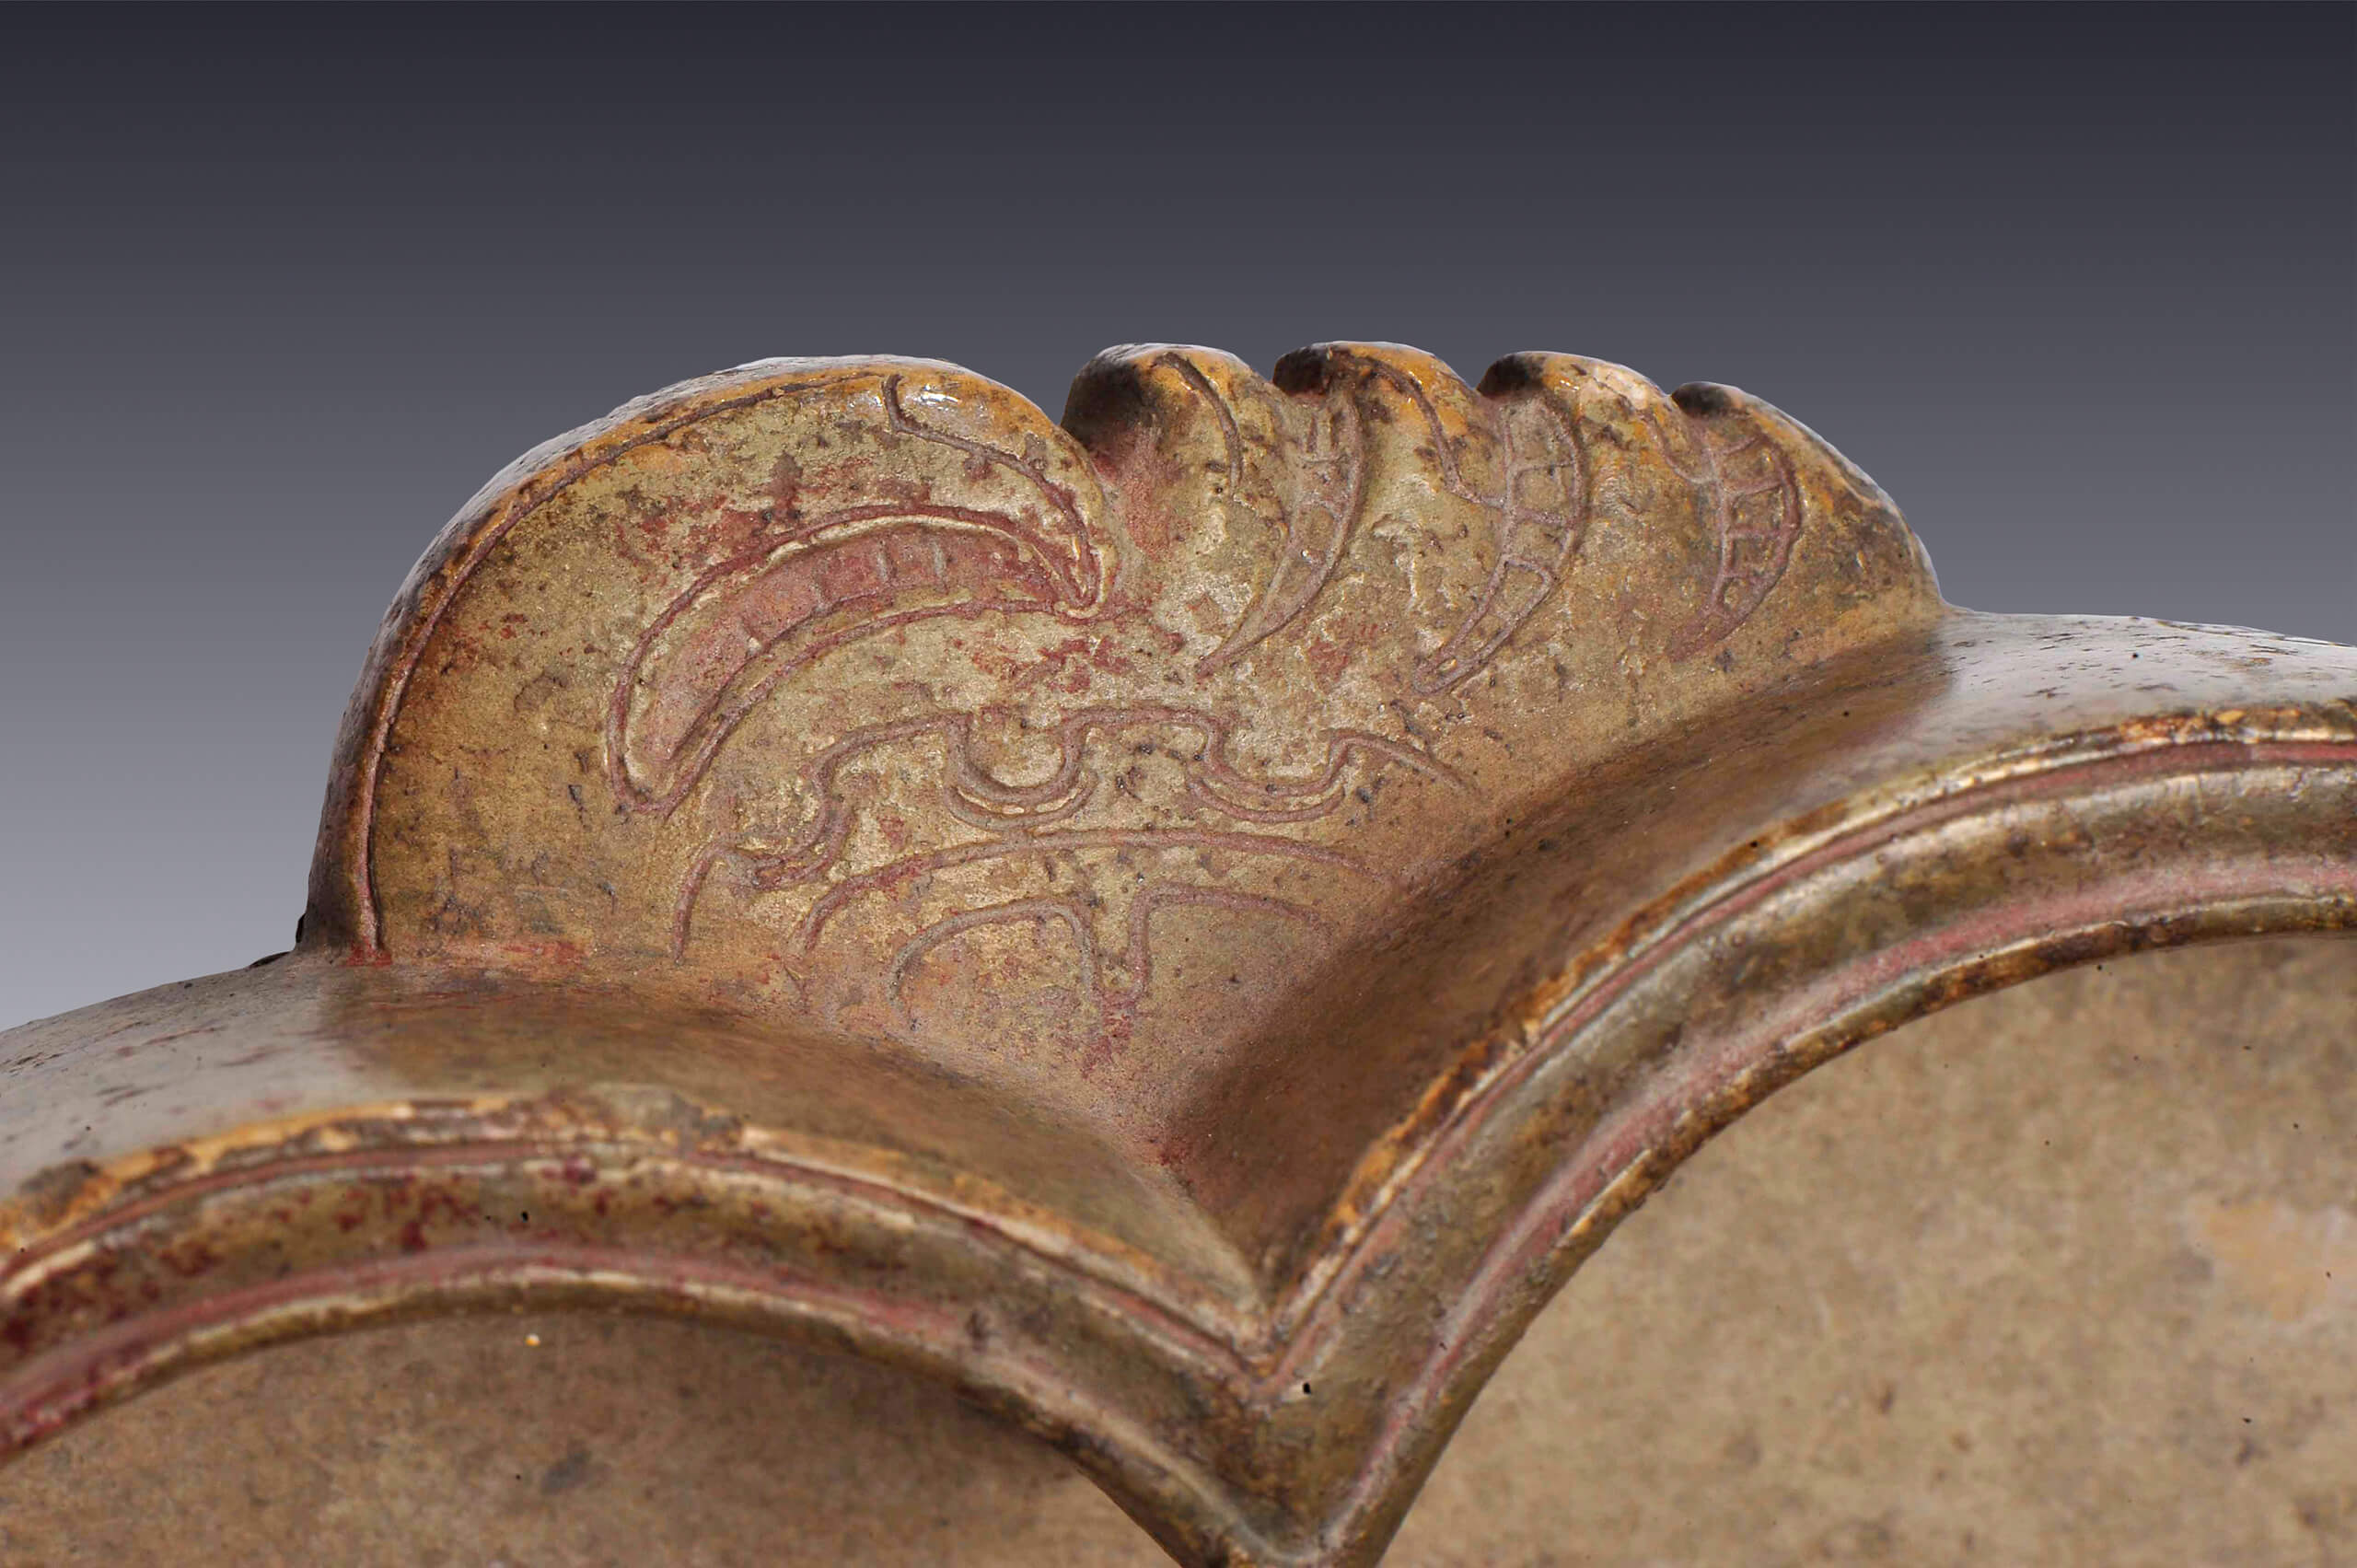 Escudilla trilobular con una serpiente de cuyas fauces surge un personaje | El México antiguo. Salas de Arte Prehispánico | Museo Amparo, Puebla